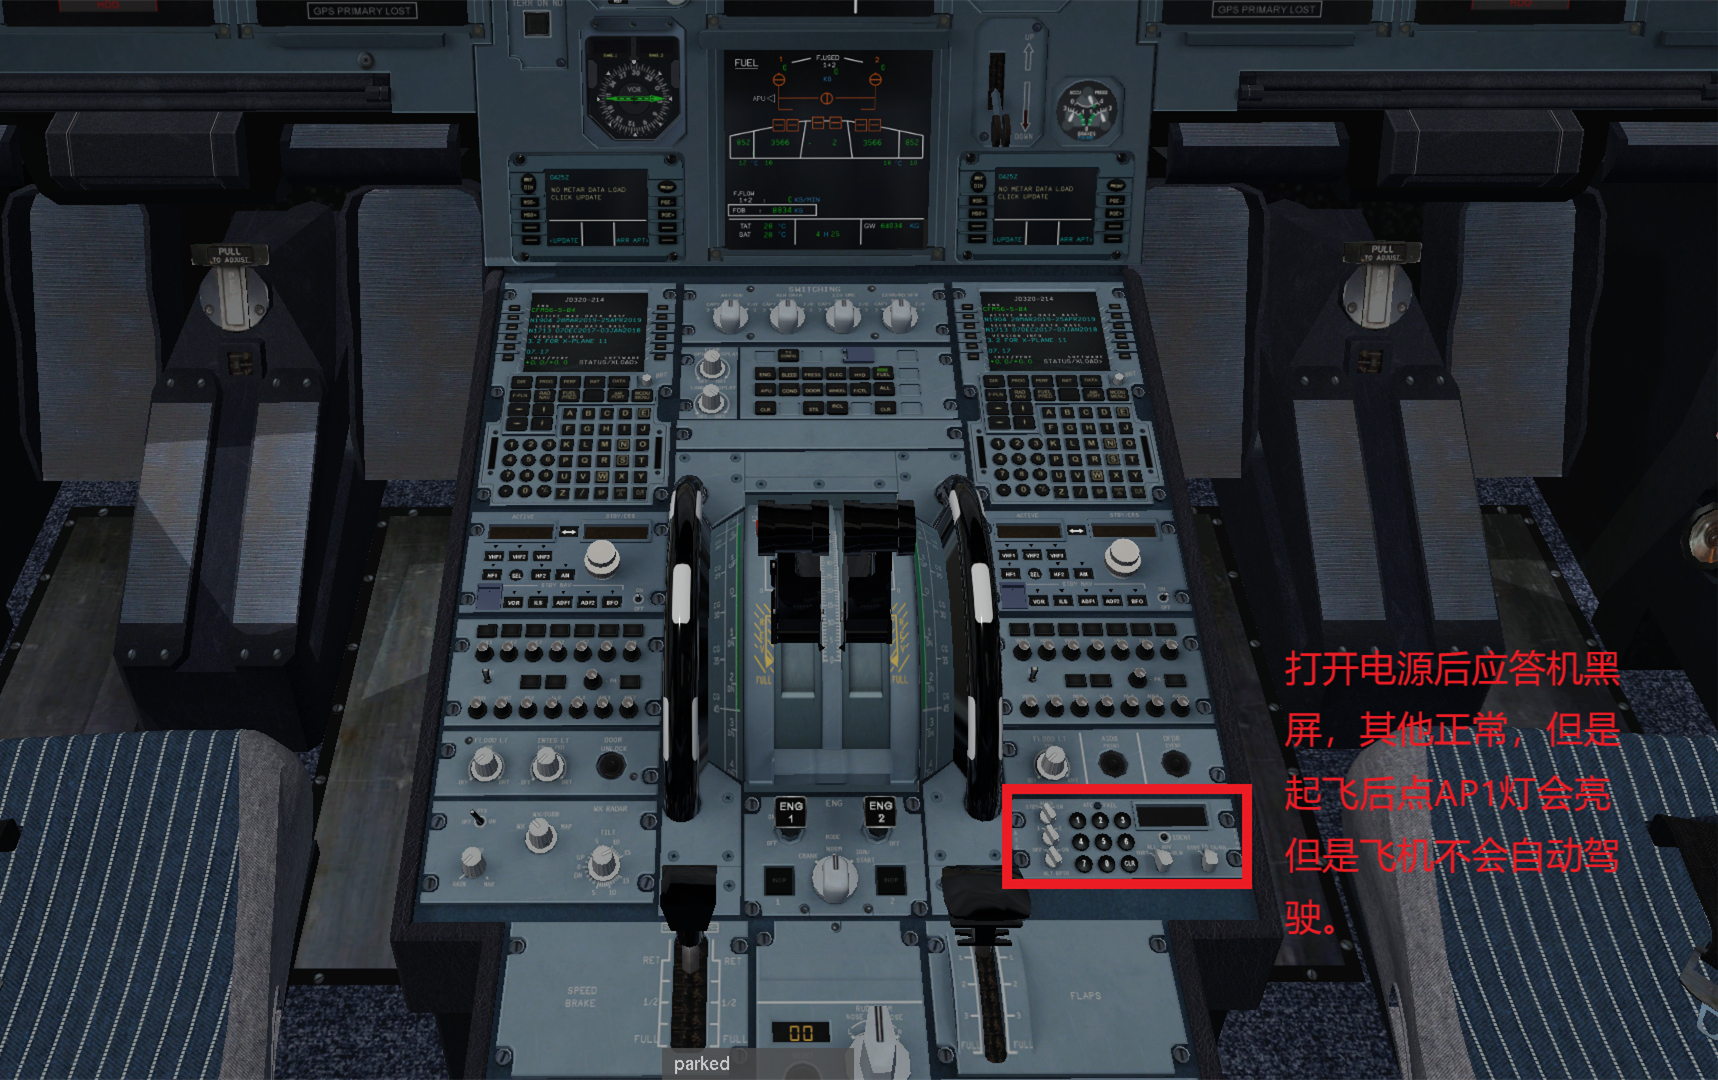 JARD A320  不能导航应答机黑屏的解决办法-5049 